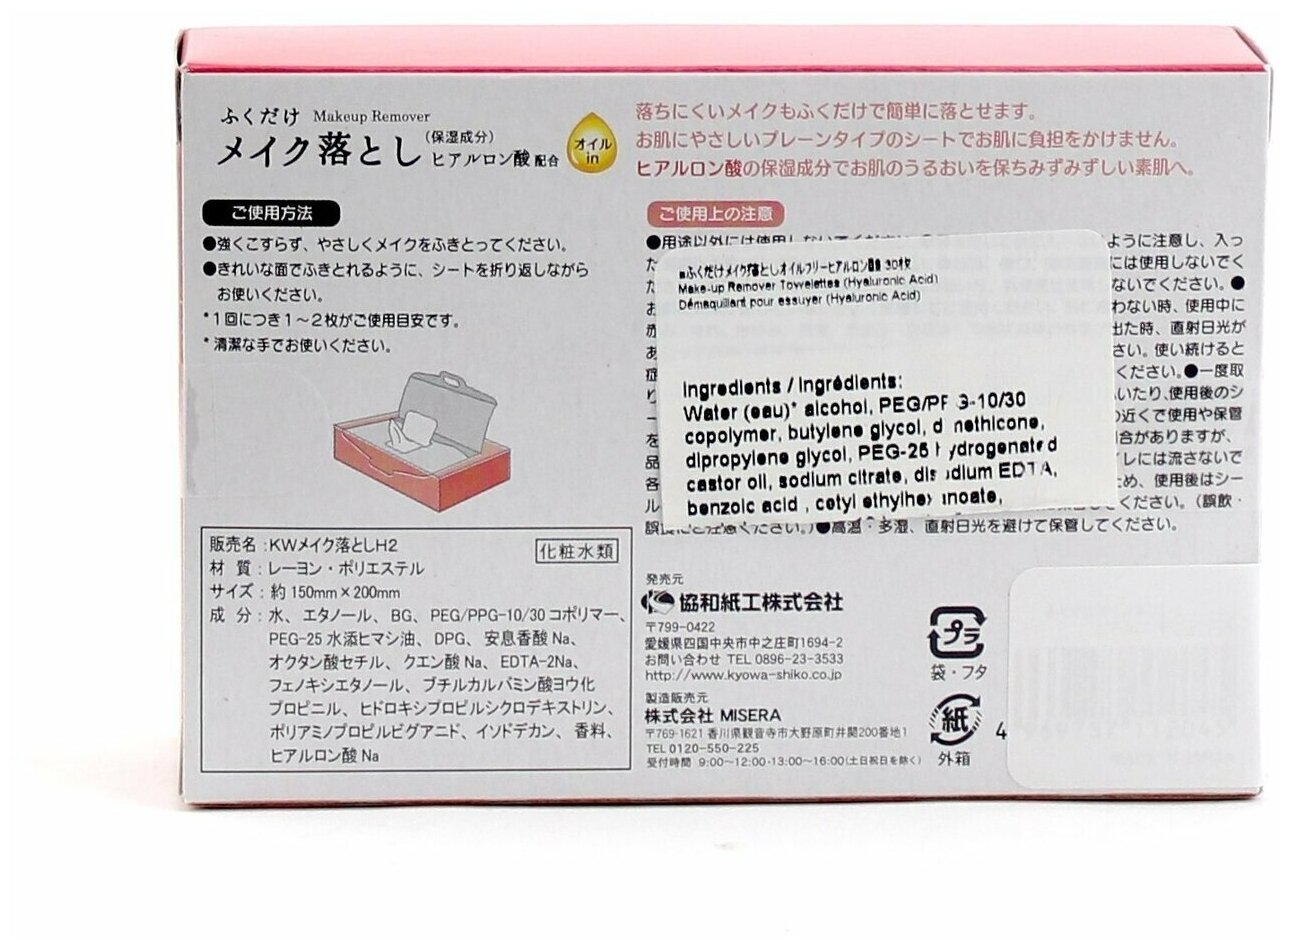 Kyowa Салфетки влажные для снятия макияжа с гиалуроновой кислотой (30 штук), Япония